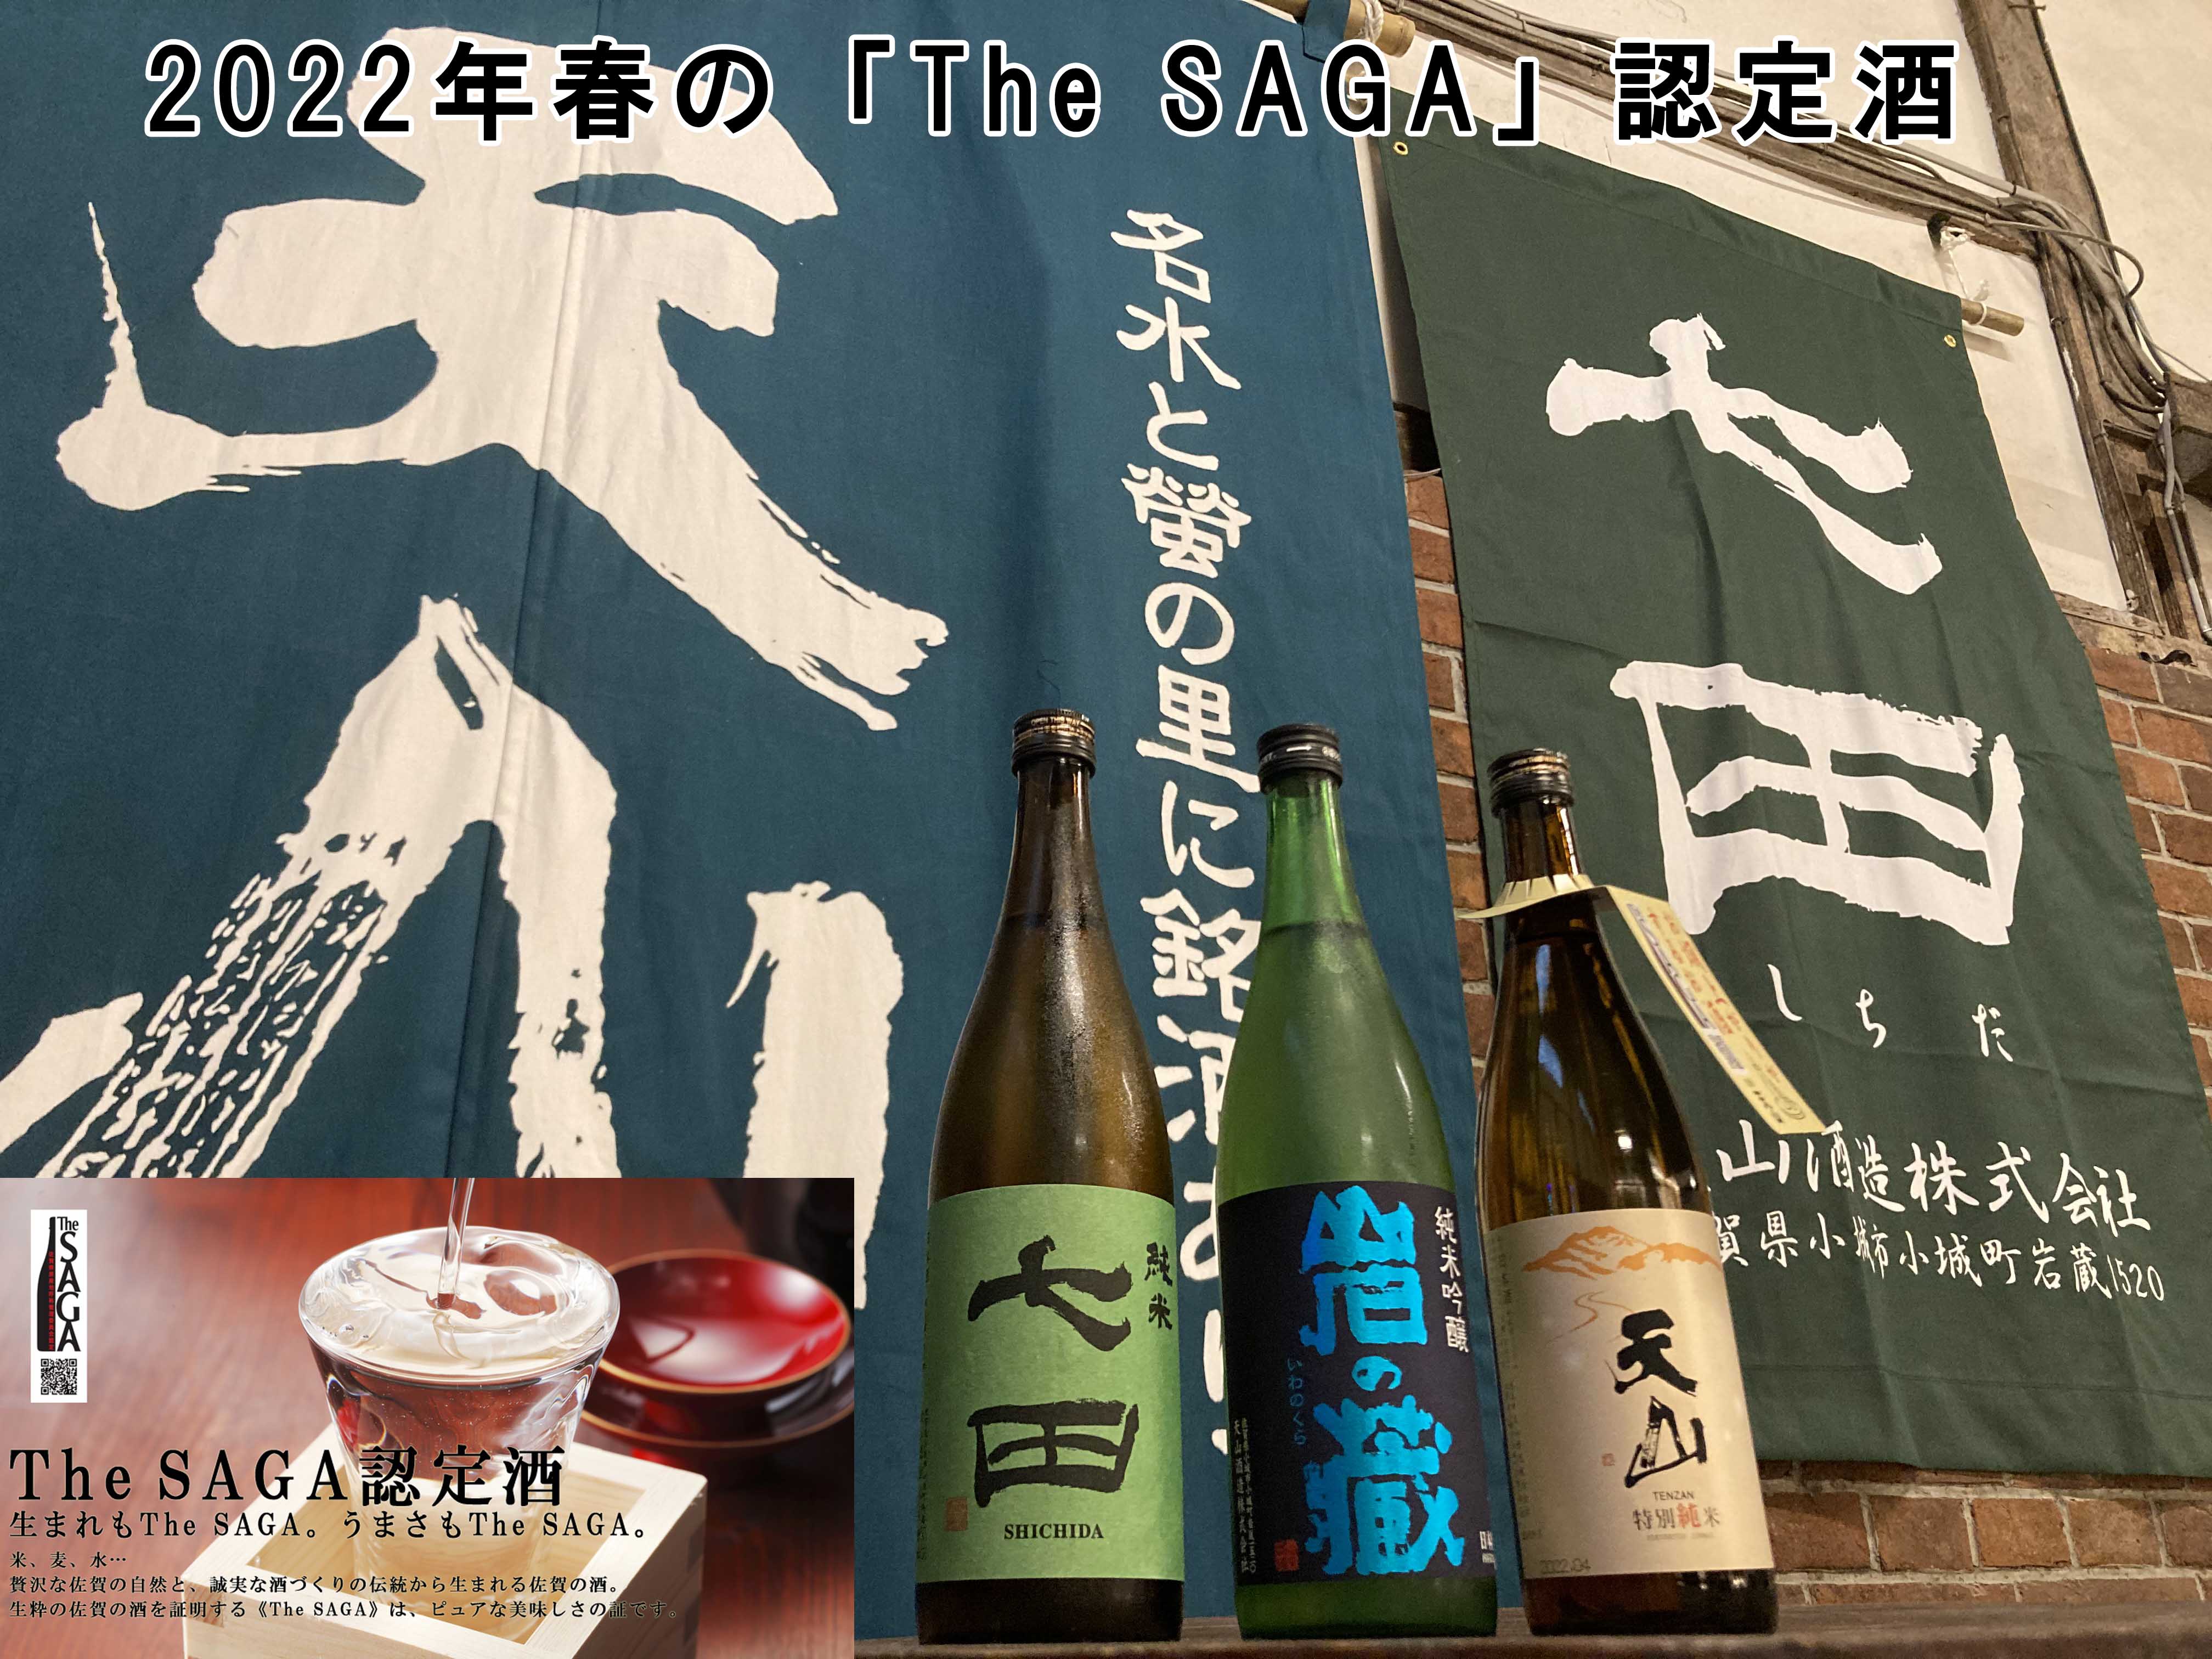 2022年春の「The SAGA 認定酒」のお知らせ | 天山酒造